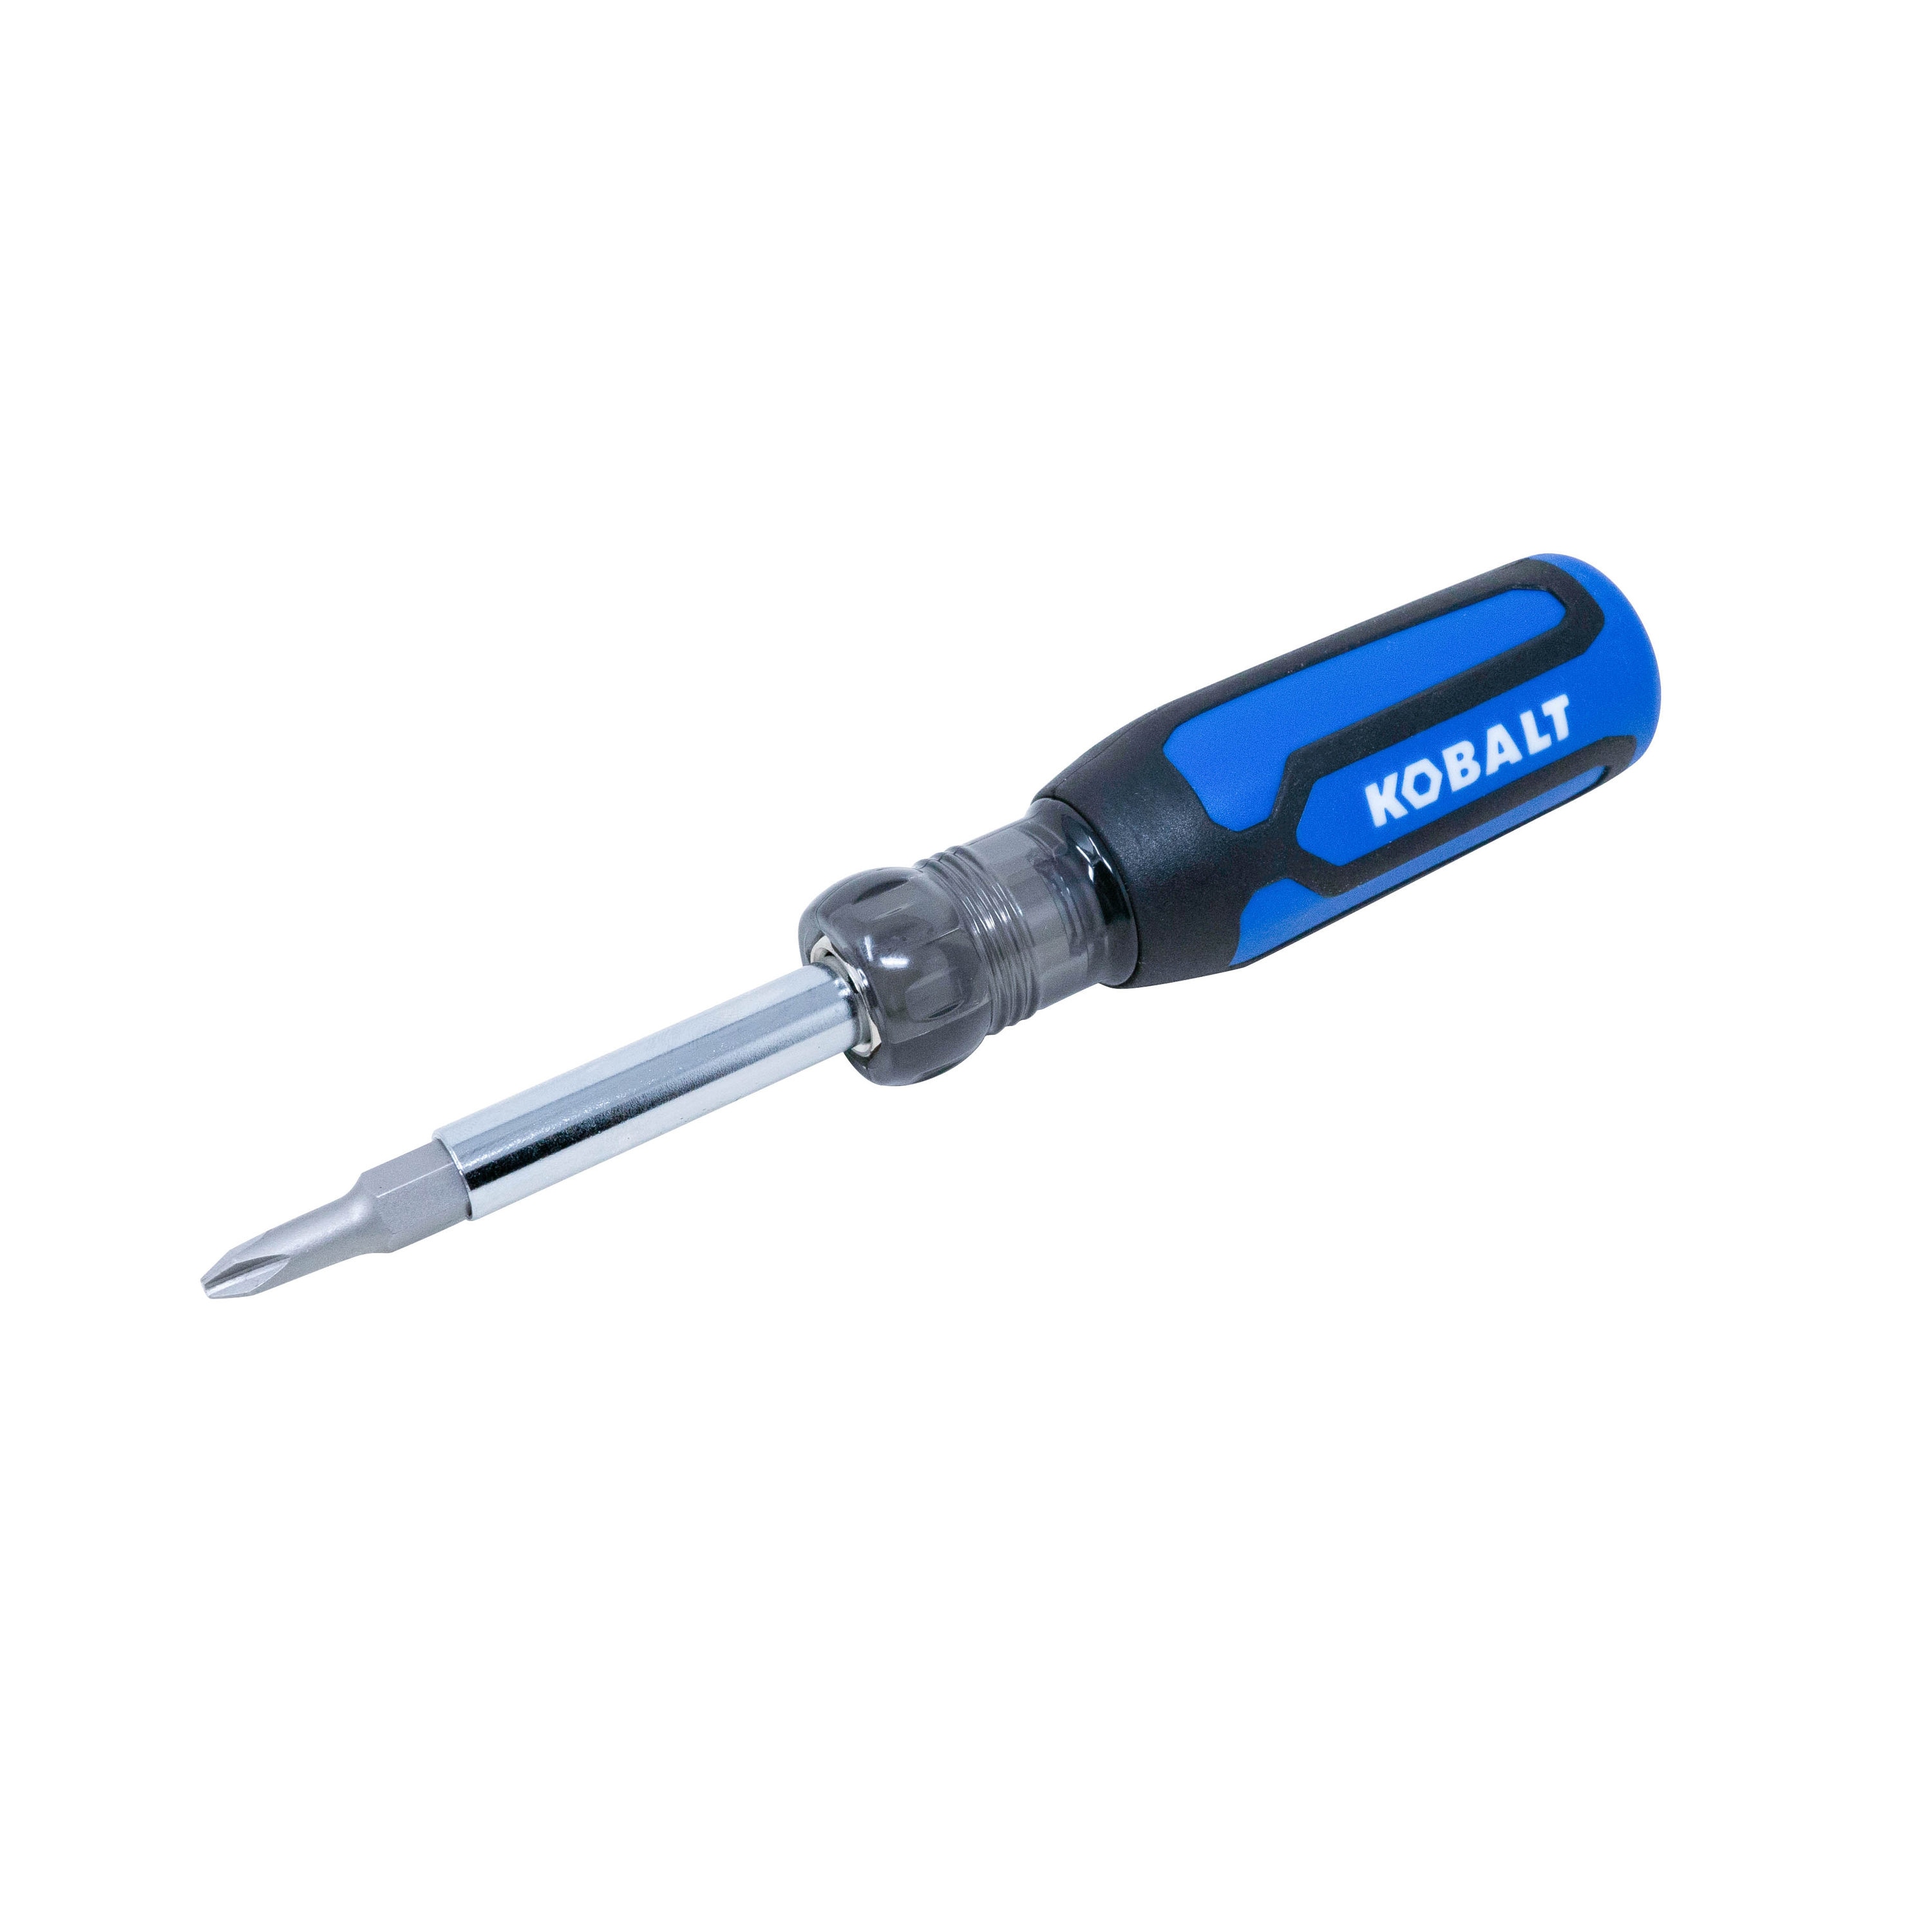 Kobalt Electrician's Tool Kit, 12-16 Awg Stranded